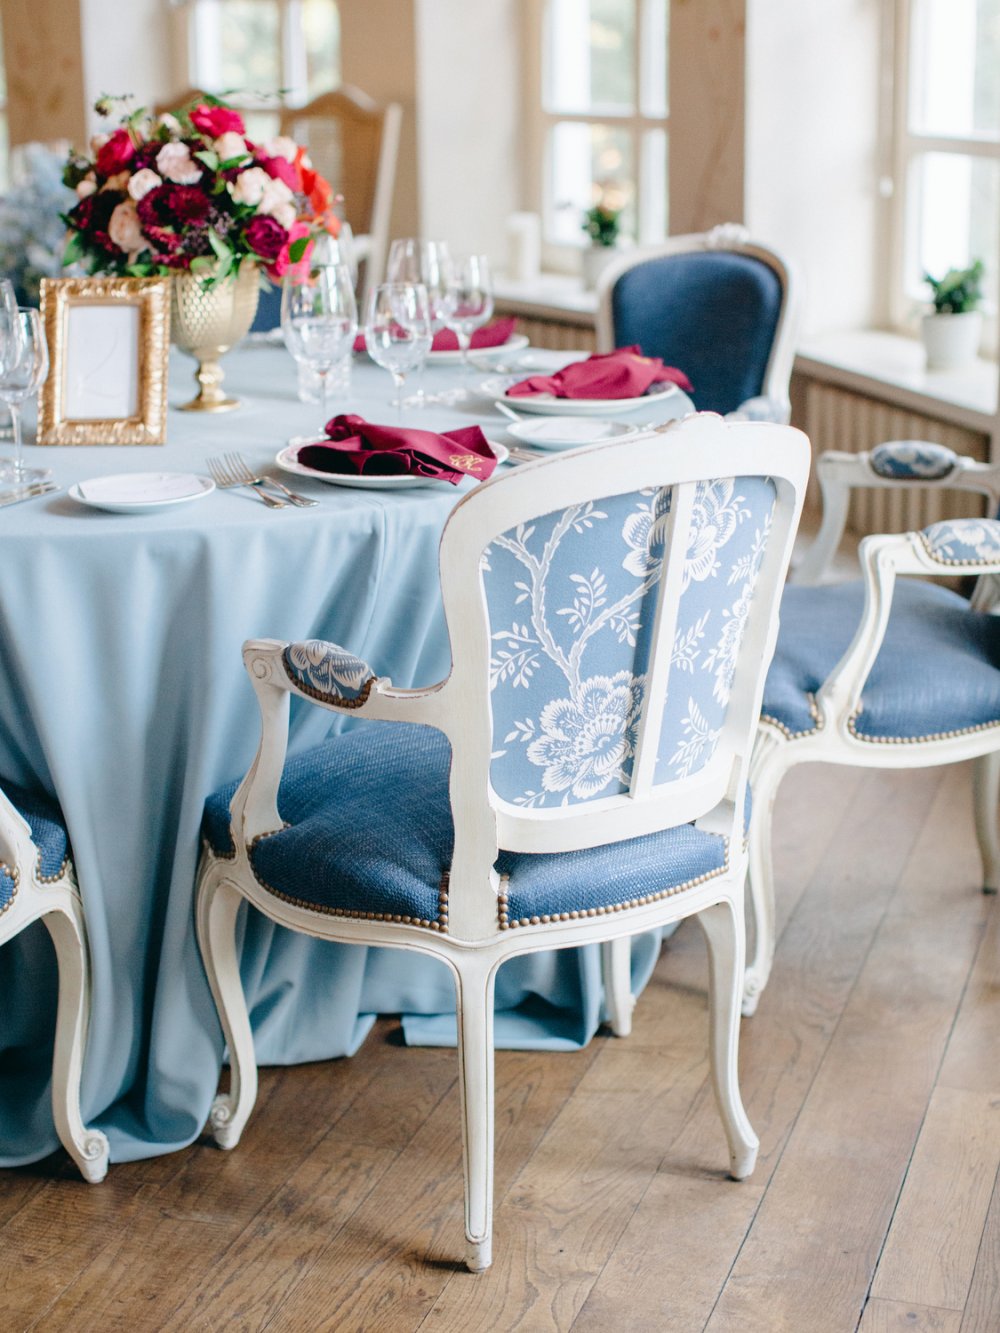 стильное оформление гостевых столов в классическом стиле в голубых тонах с бордовыми акцентами